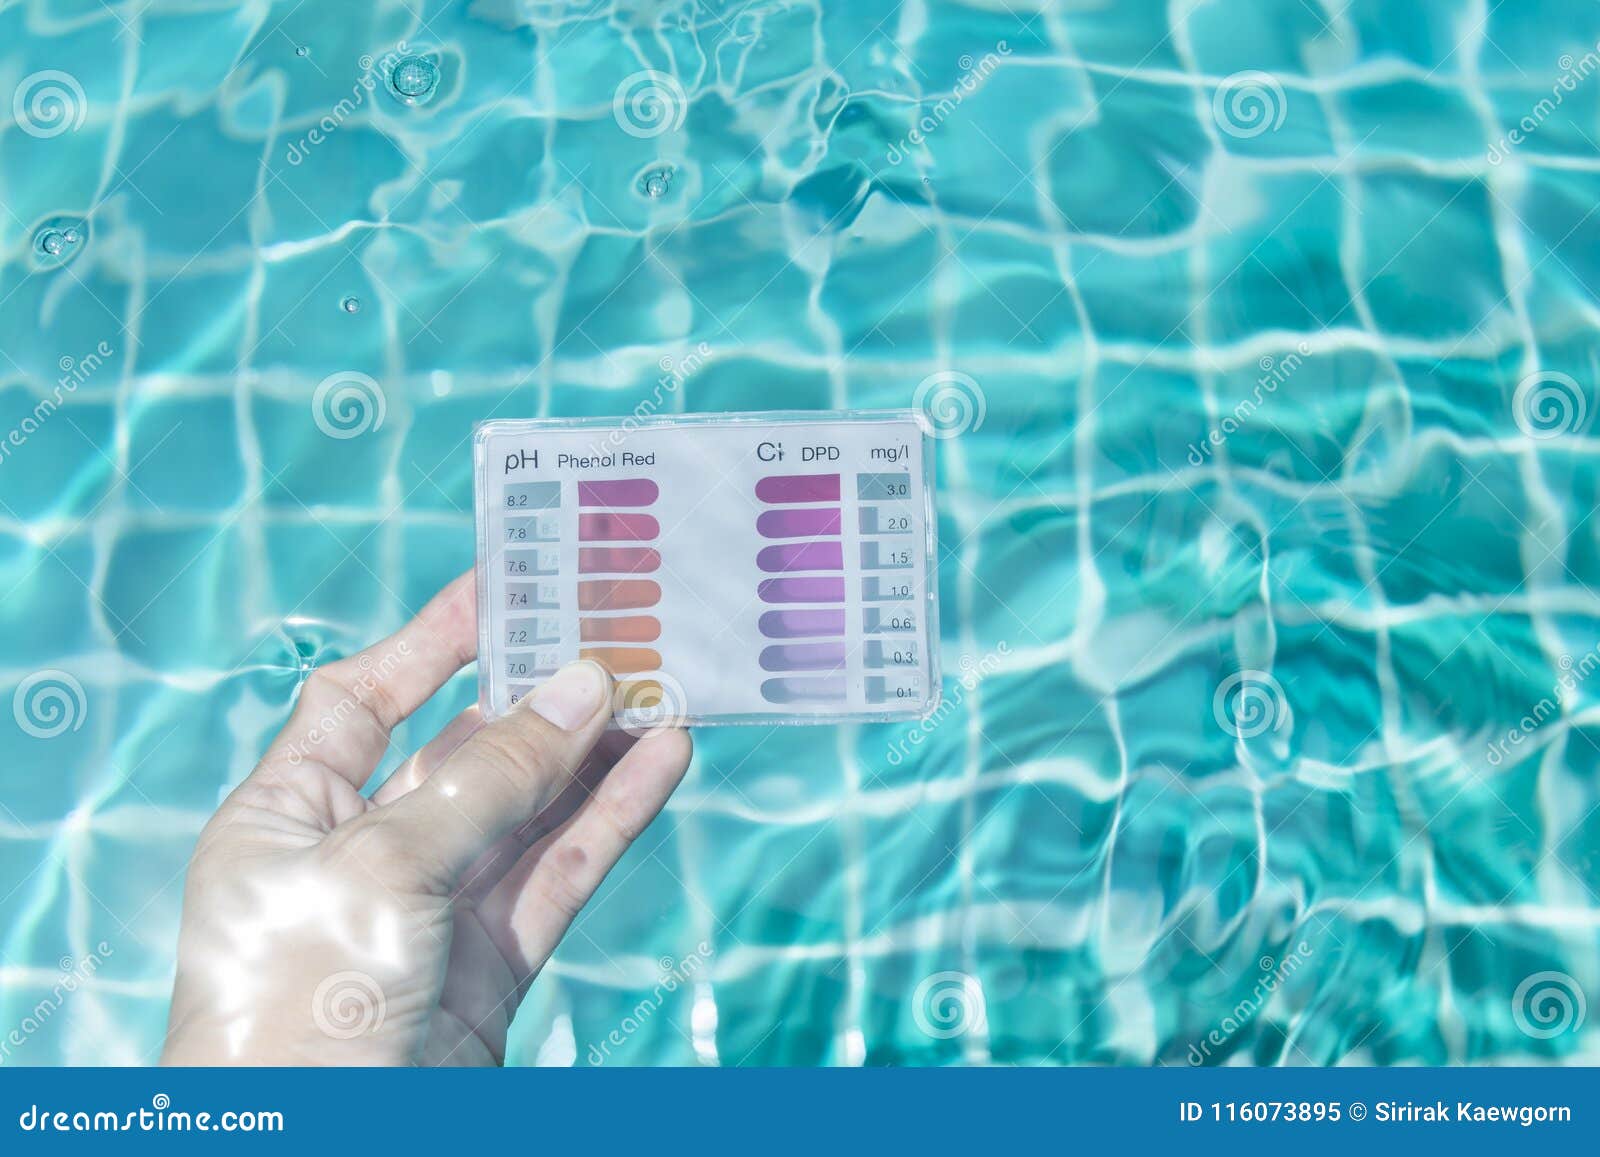 Качество воды в бассейне. Проба воды в бассейне. Измерение хлора в бассейне. Контроль качества воды в бассейне. PH воды в бассейне.